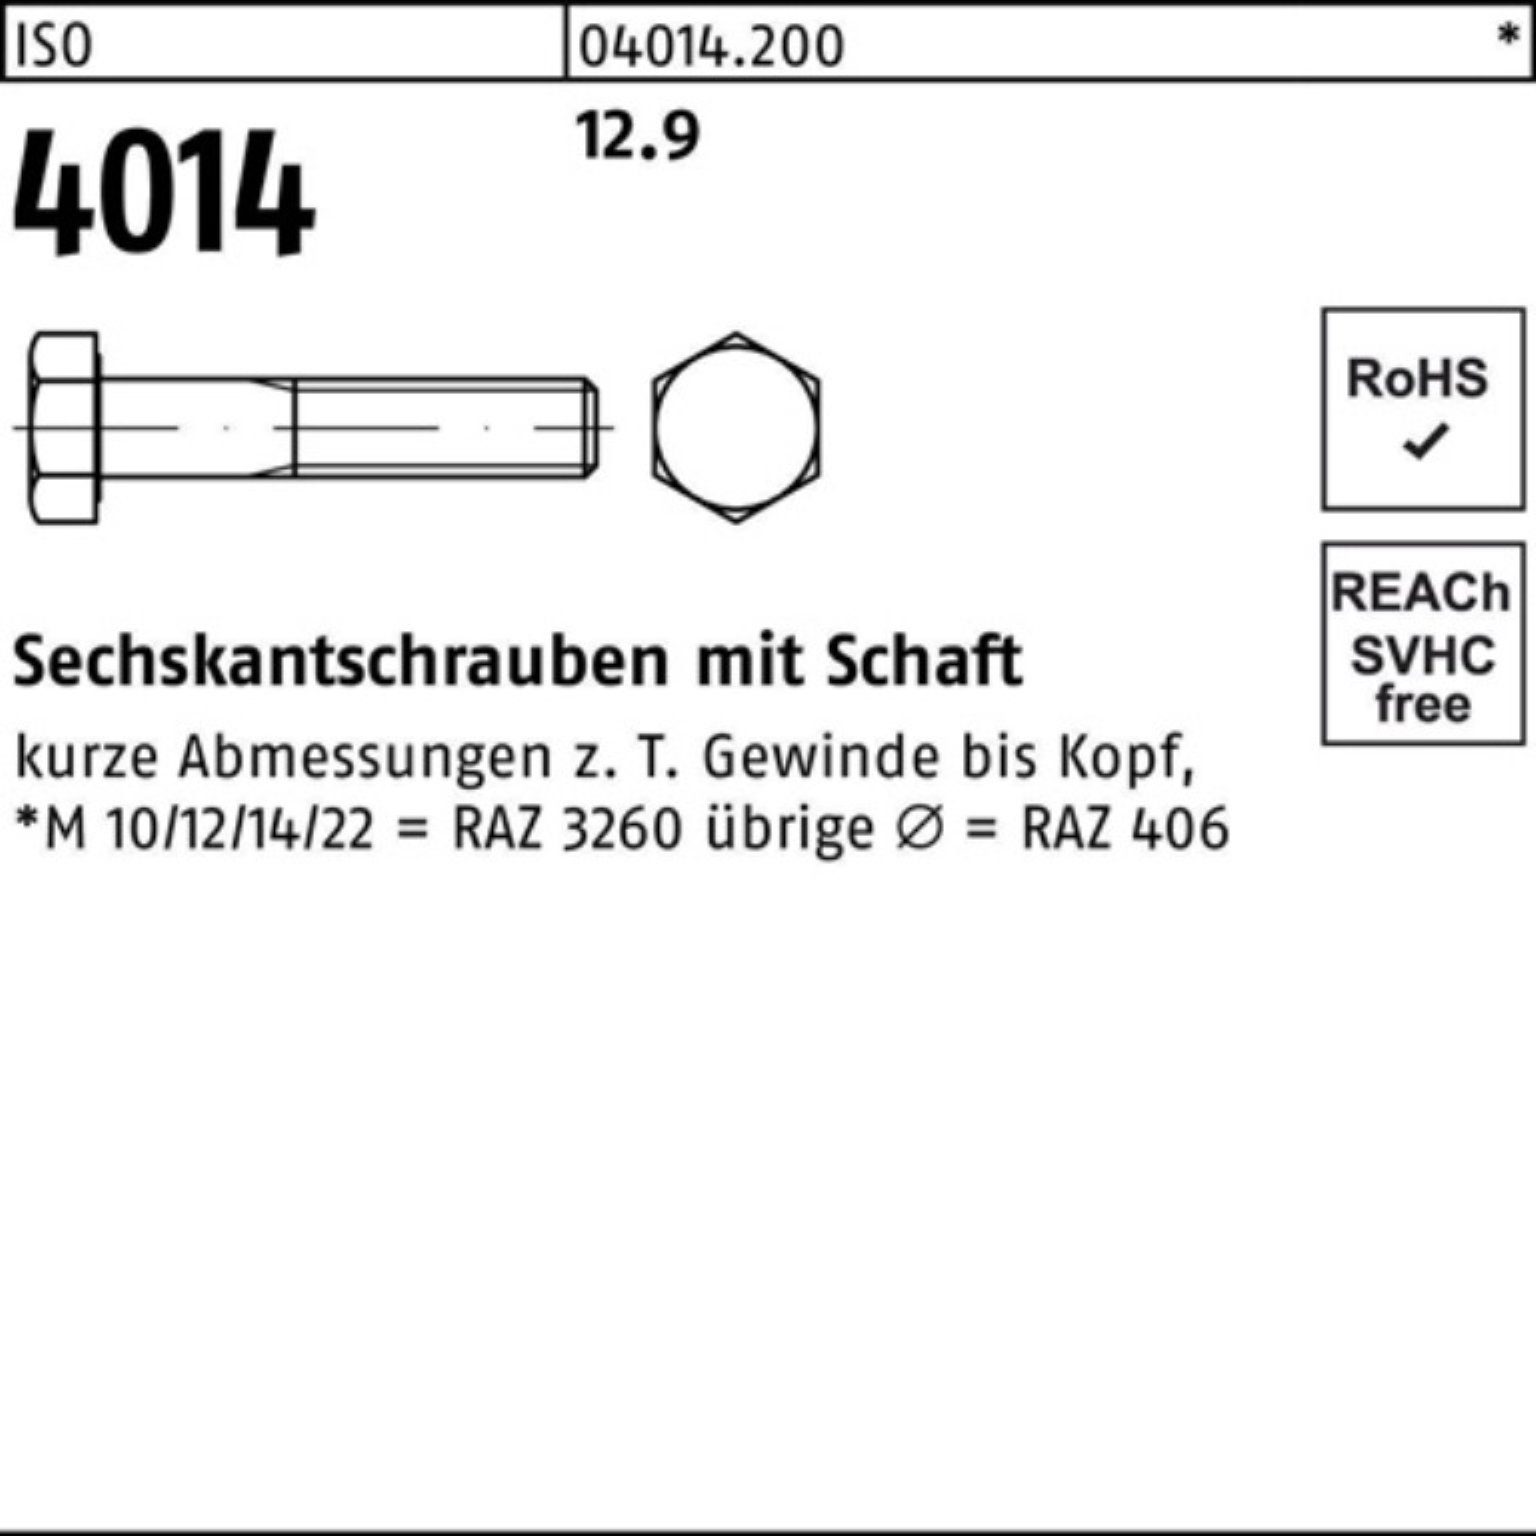 160 I 25 ISO Schaft Sechskantschraube Sechskantschraube M20x 4014 100er Stück Pack 12.9 Bufab